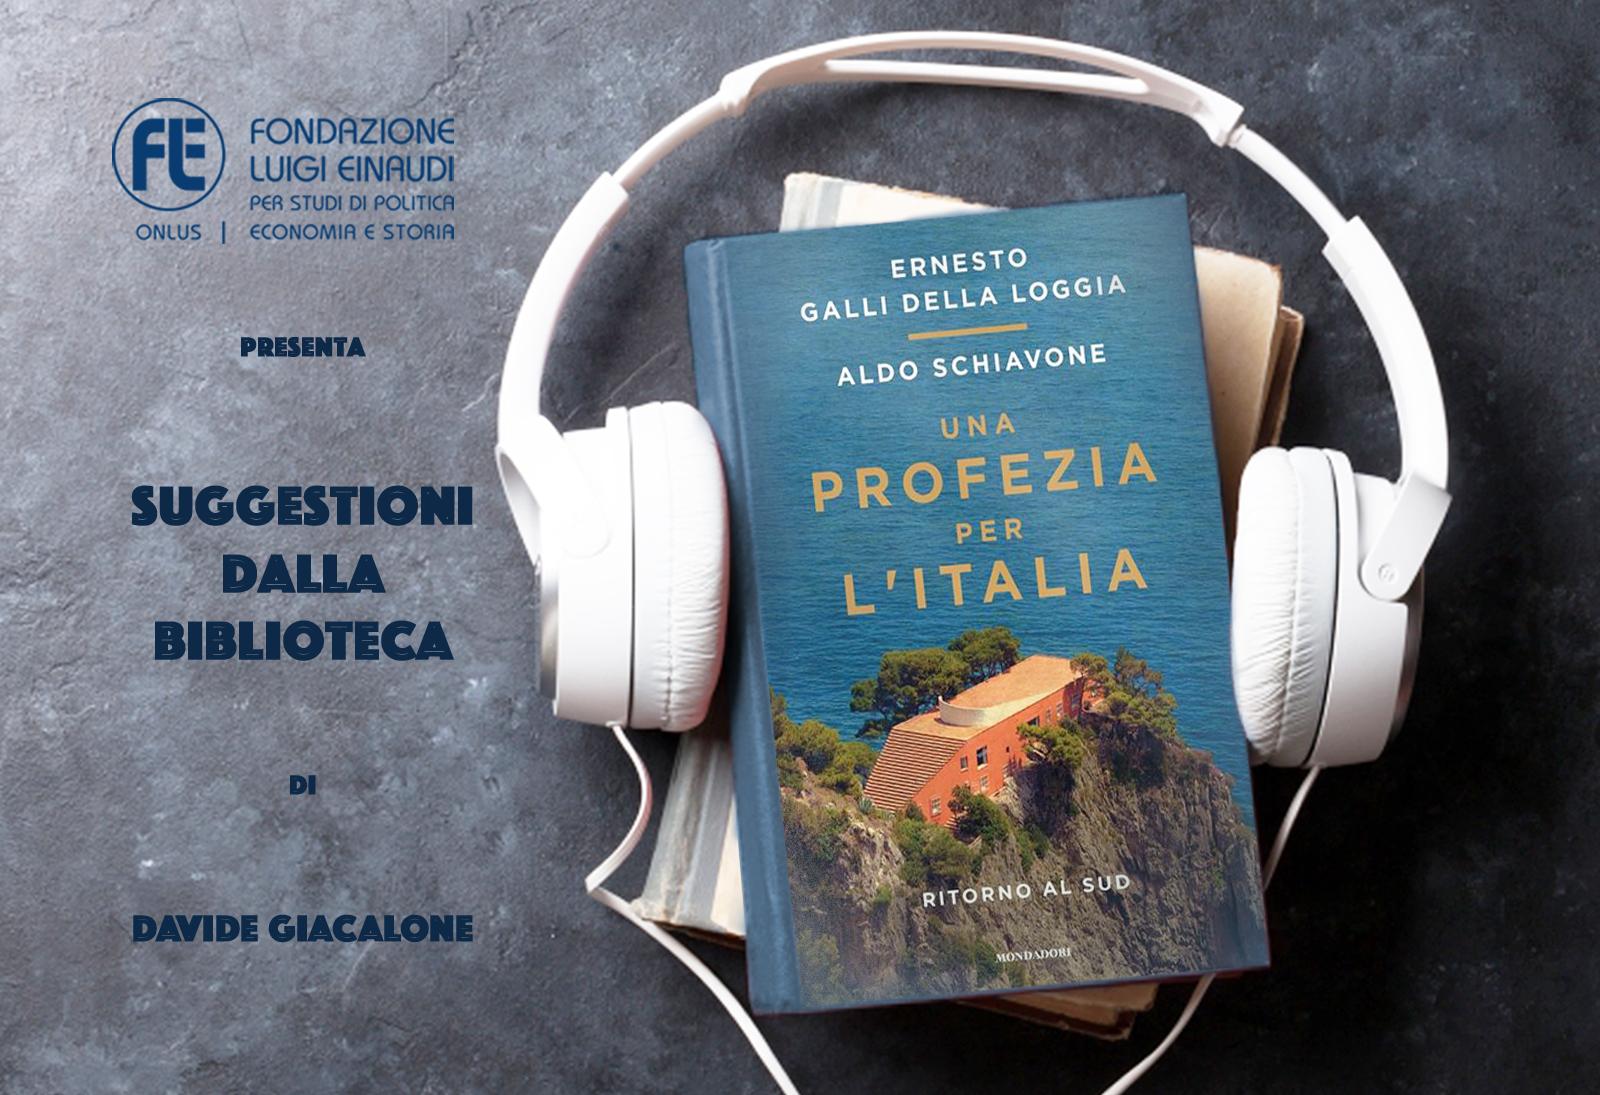 Ernesto Galli della Loggia e Aldo Schiavone – Una profezia per l’Italia